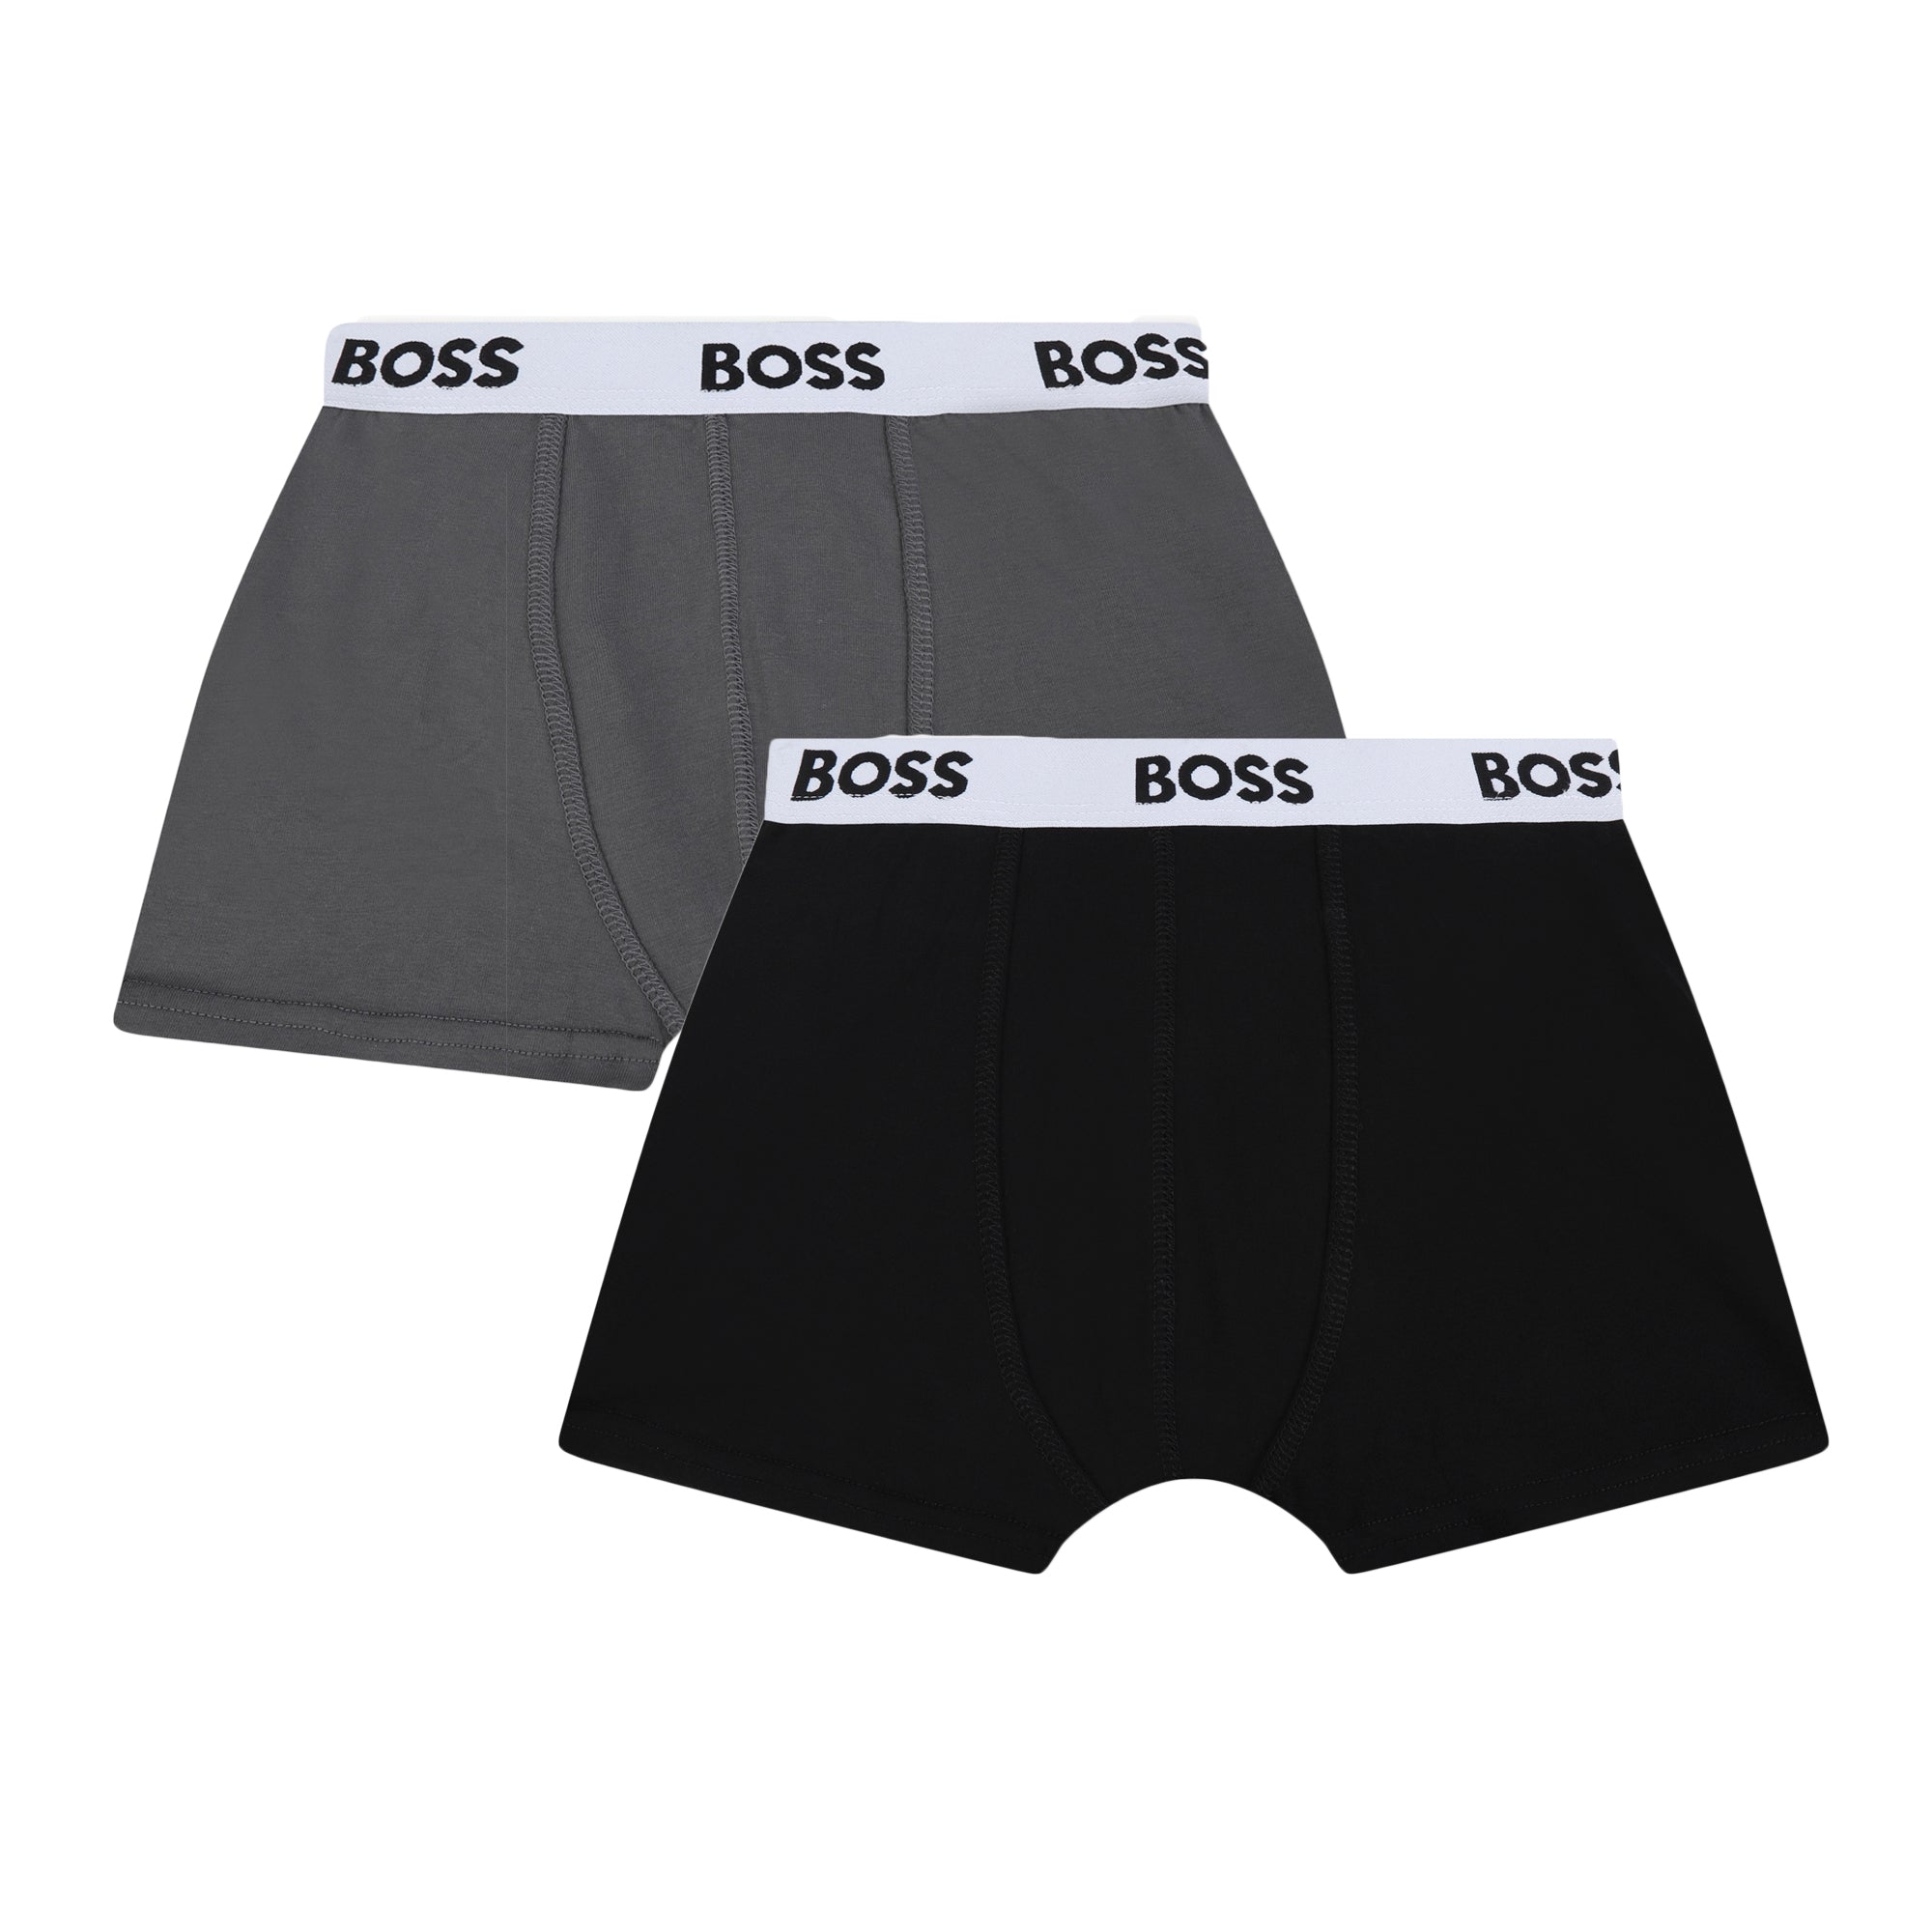 Boys Grey Cotton Underwear Set(2 Pack)